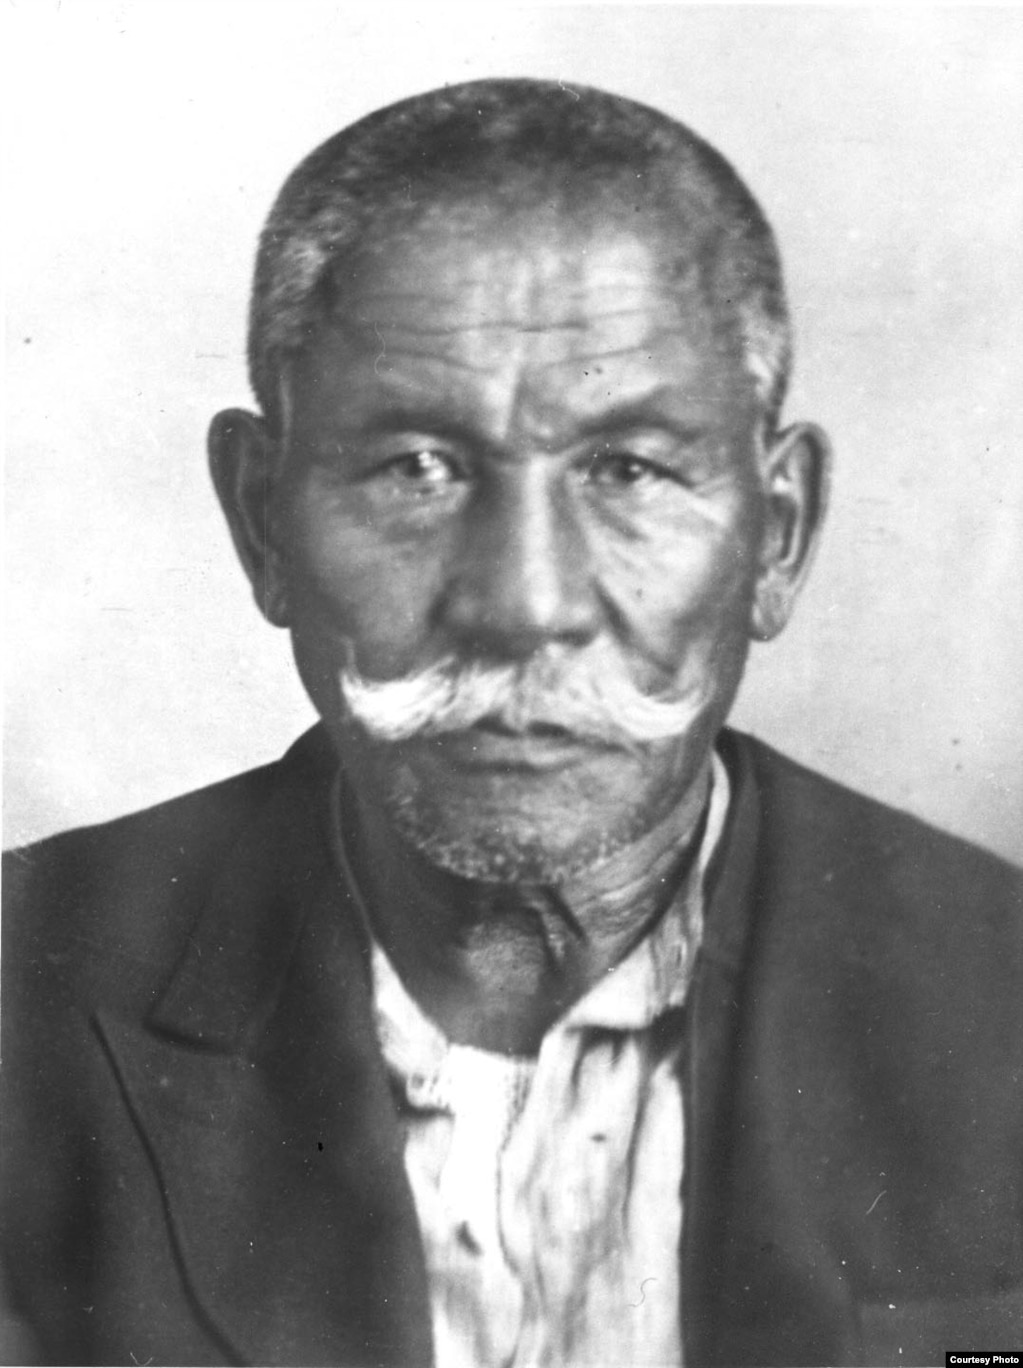 Әлихан Бөкейхан 1937 жылы 71 жасында Мәскеуде Сталиннің бұйрығымен атылды. Атылар алдындағы суреті. Бутырка түрмесі, Мәскеу, 1937 жыл.